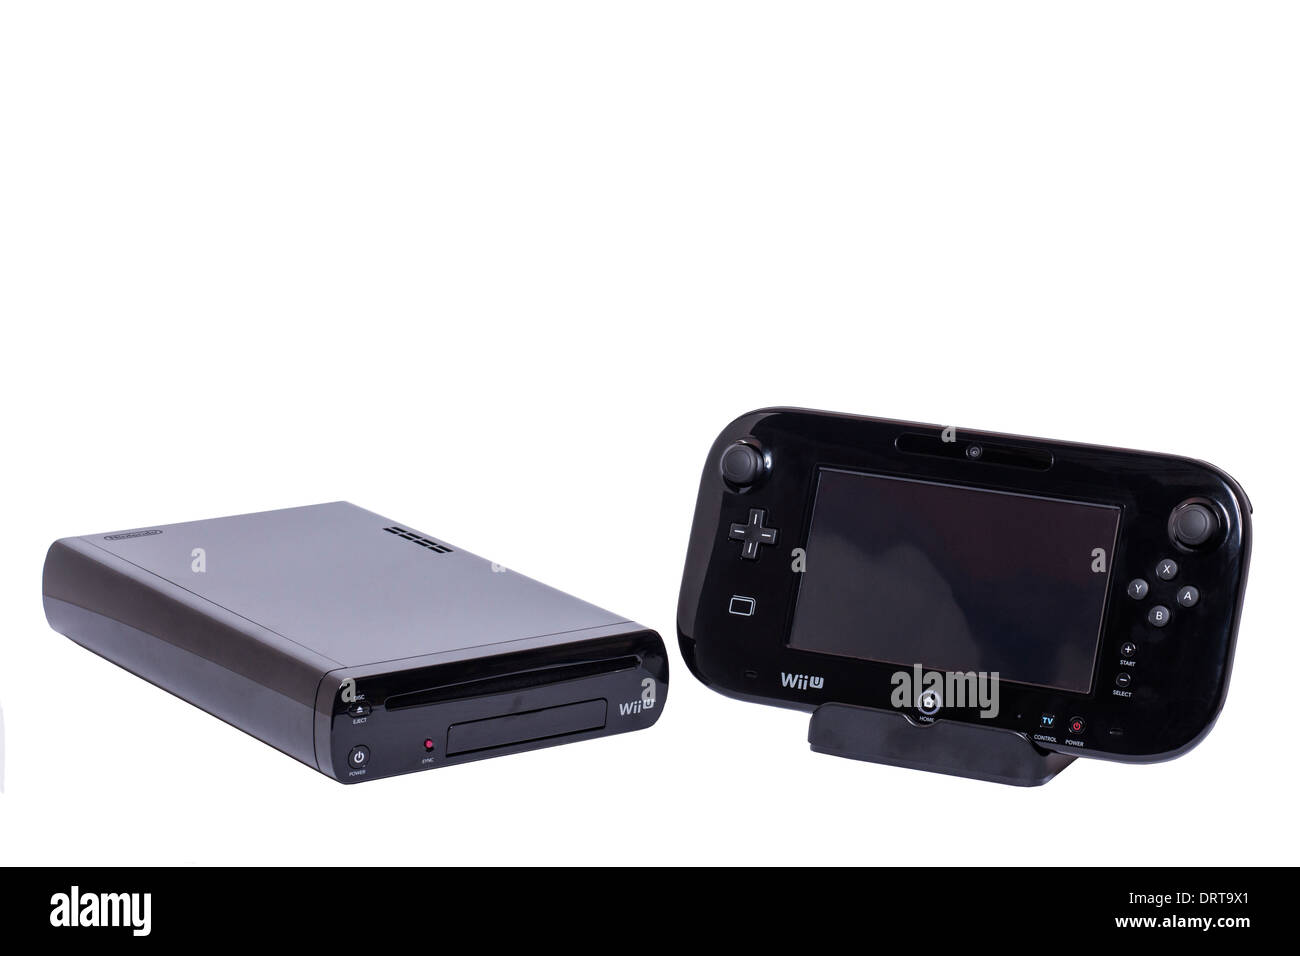 Wii u -Fotos und -Bildmaterial in hoher Auflösung – Alamy